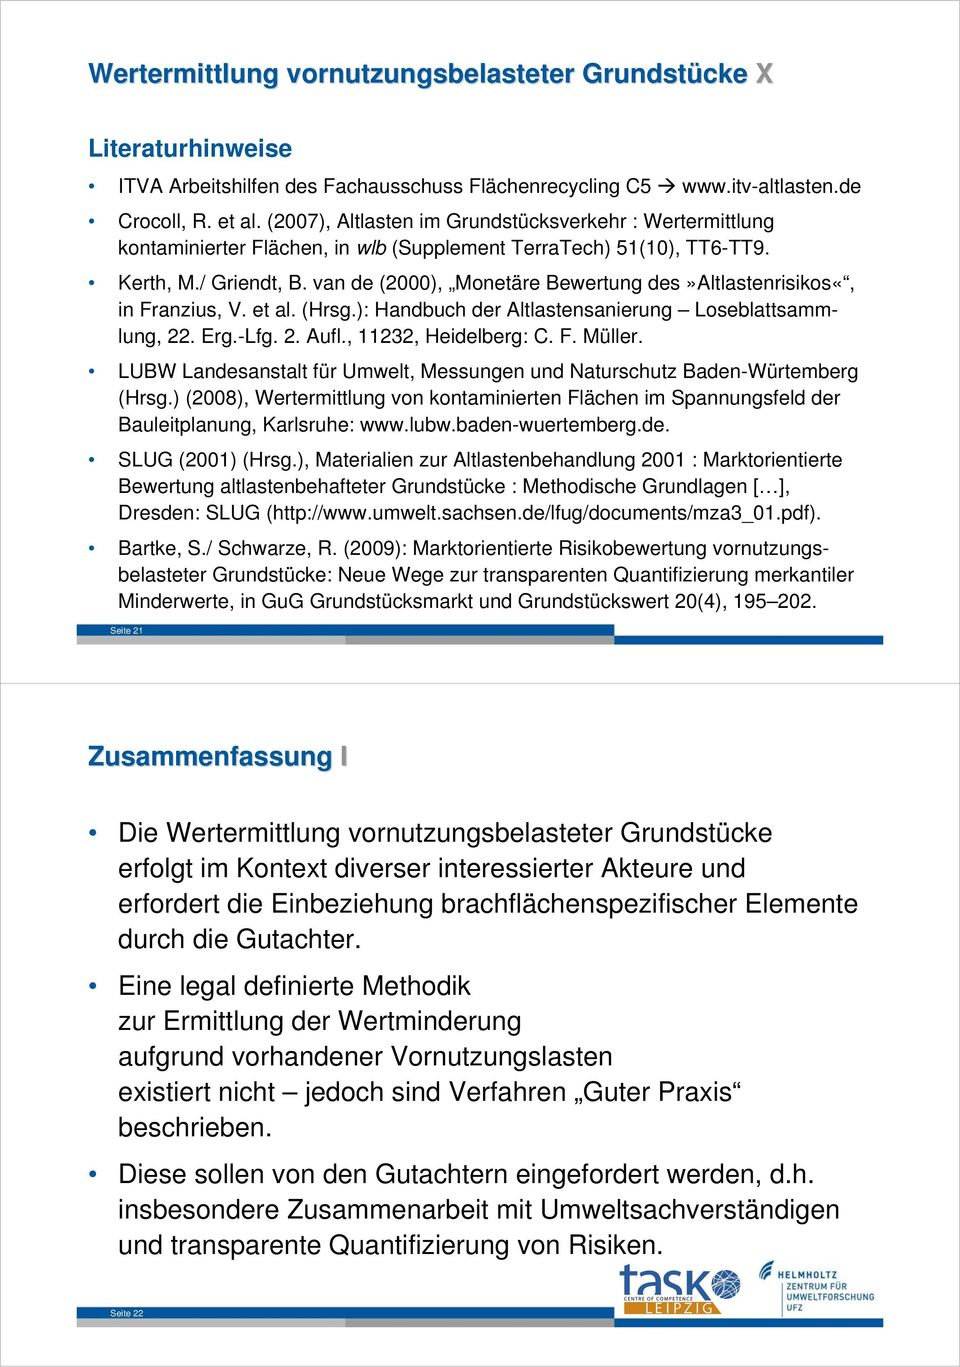 van de (2000), Monetäre Bewertung des»altlastenrisikos«, in Franzius, V. et al. (Hrsg.): Handbuch der Altlastensanierung Loseblattsammlung, 22. Erg.-Lfg. 2. Aufl., 11232, Heidelberg: C. F. Müller.